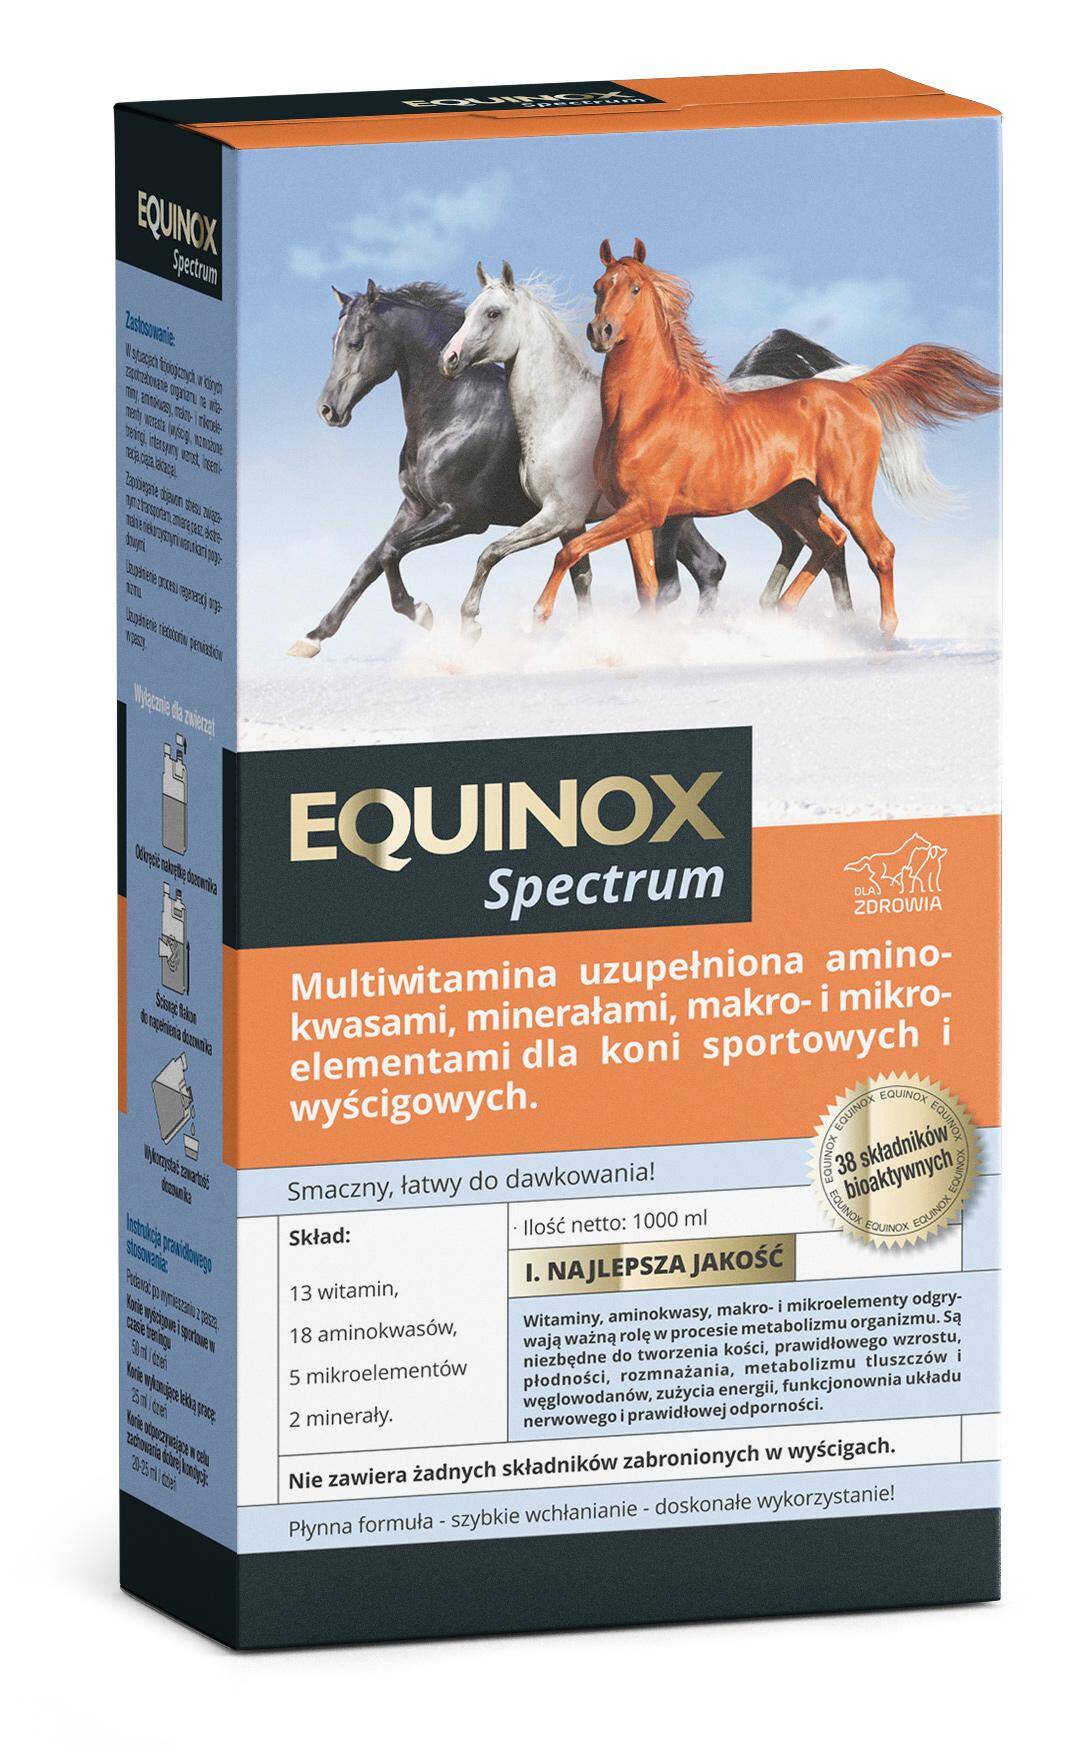 Equinox Spectrum - suplement uzupełniający dietę w witaminy i aminokwasy